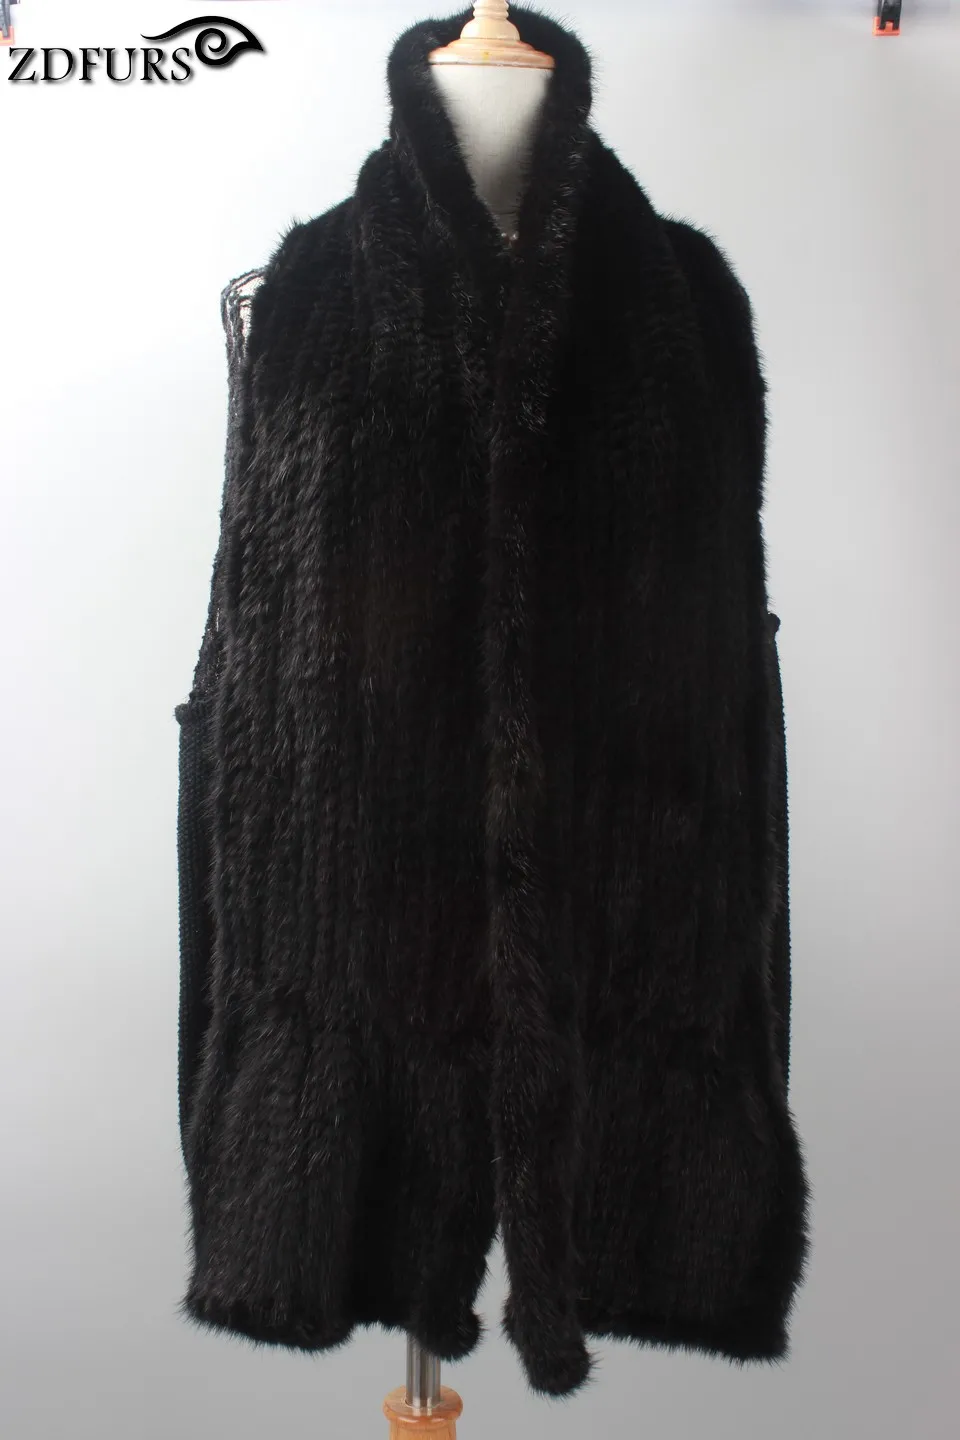 FXFURS Женский вязаный норковый меховой шарф ручной работы длинный теплый зимний меховой палантин меховая шаль 2 цвета